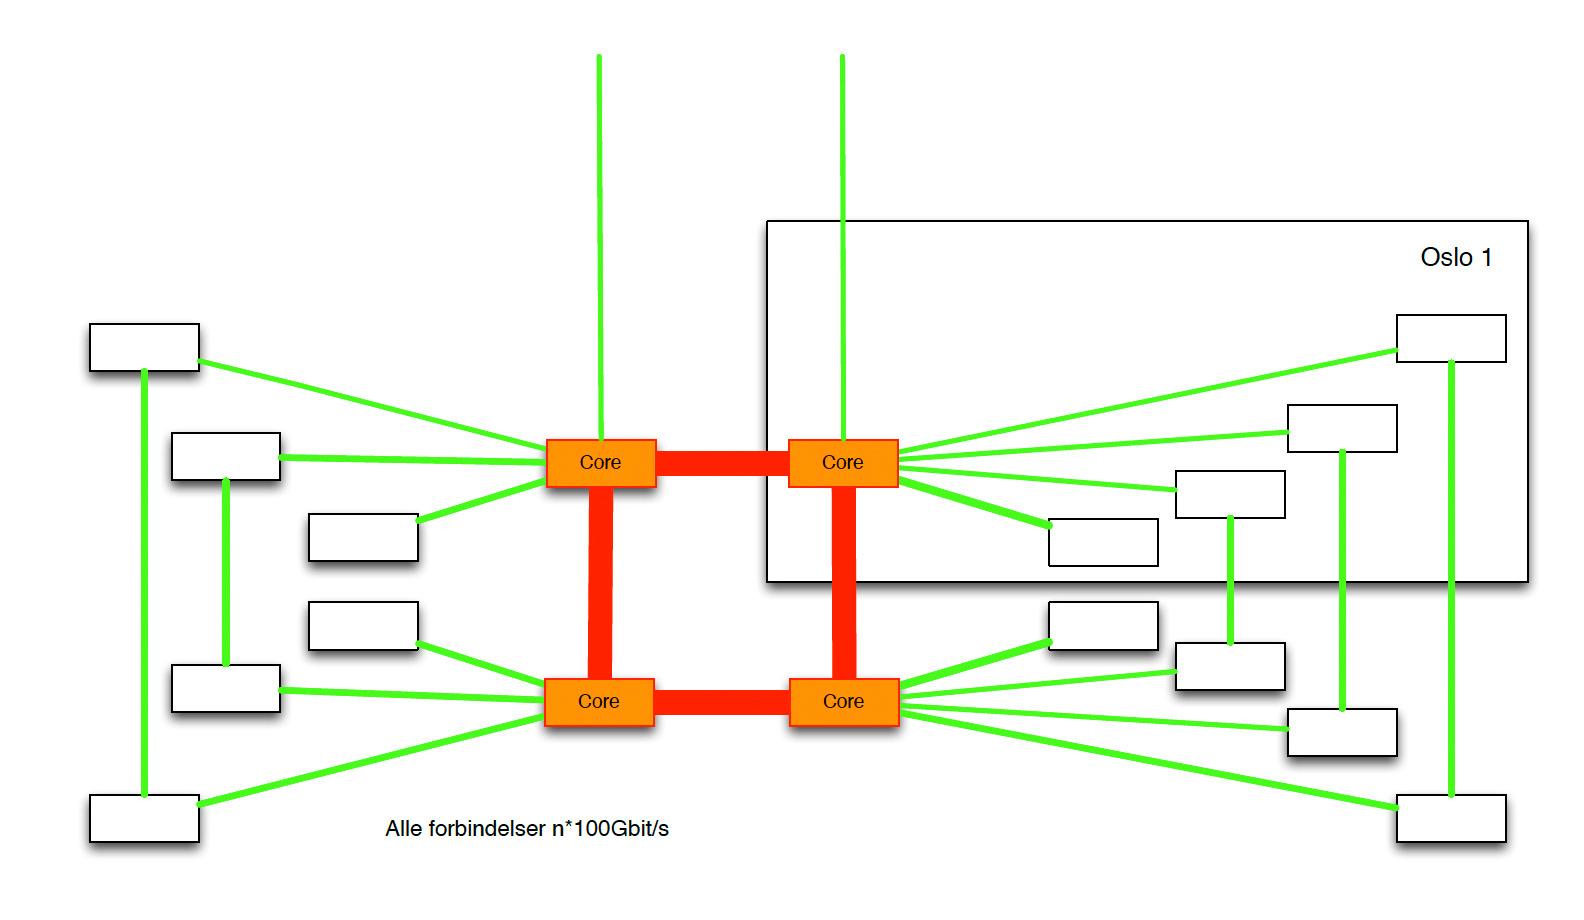 Slik er kjernenettet til Altibox bygget opp. Den noden vi besøkte er det du ser inne i rammen ("Oslo 1").